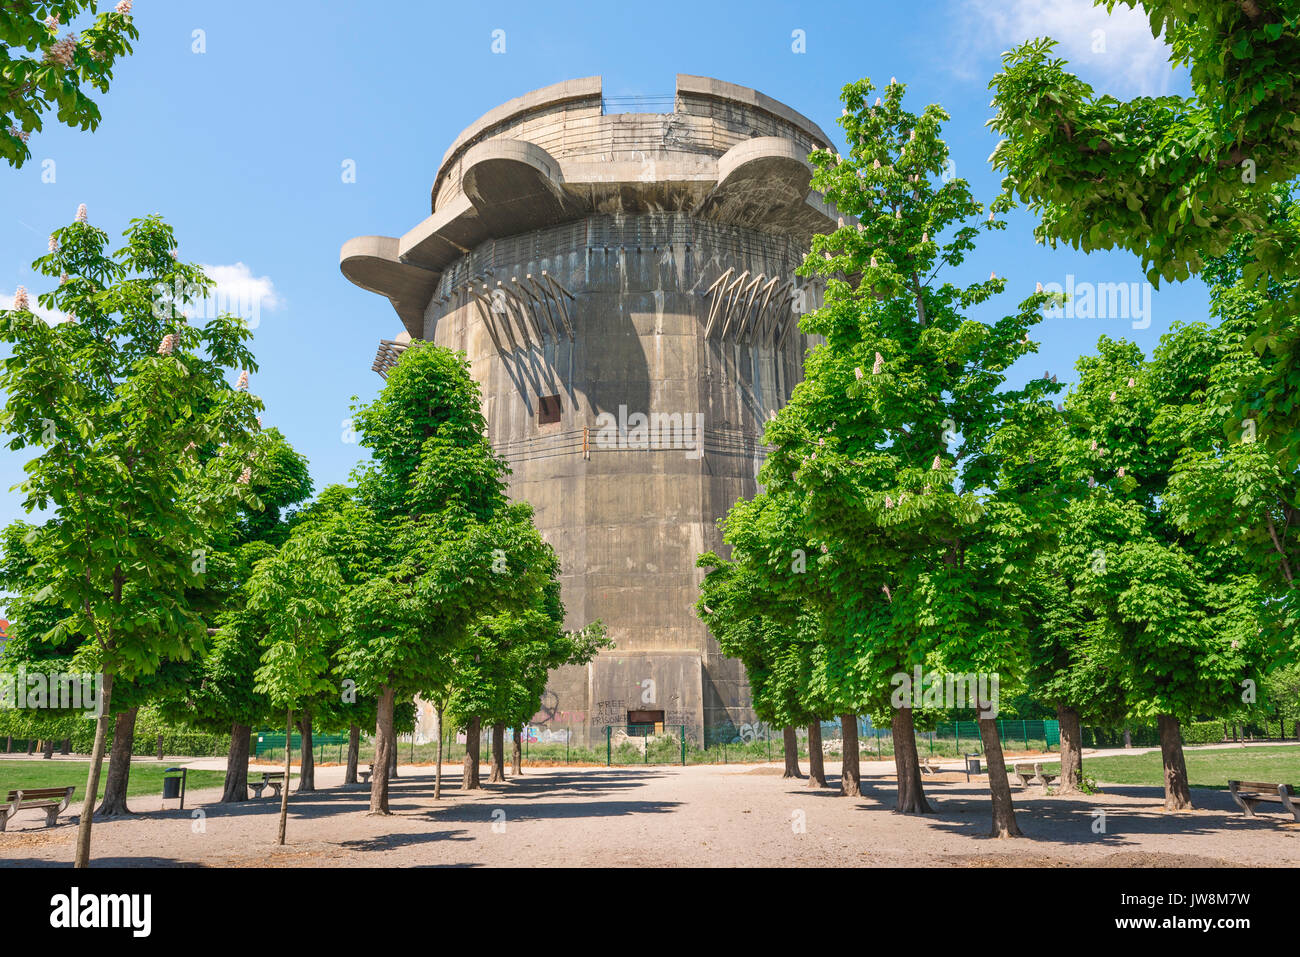 Wien flakturme Turm, einer von zwei anti-aircraft Türme (Flakturme) gebaut Wien während des Zweiten Weltkrieges noch in den Augarten, Österreich zu verteidigen. Stockfoto